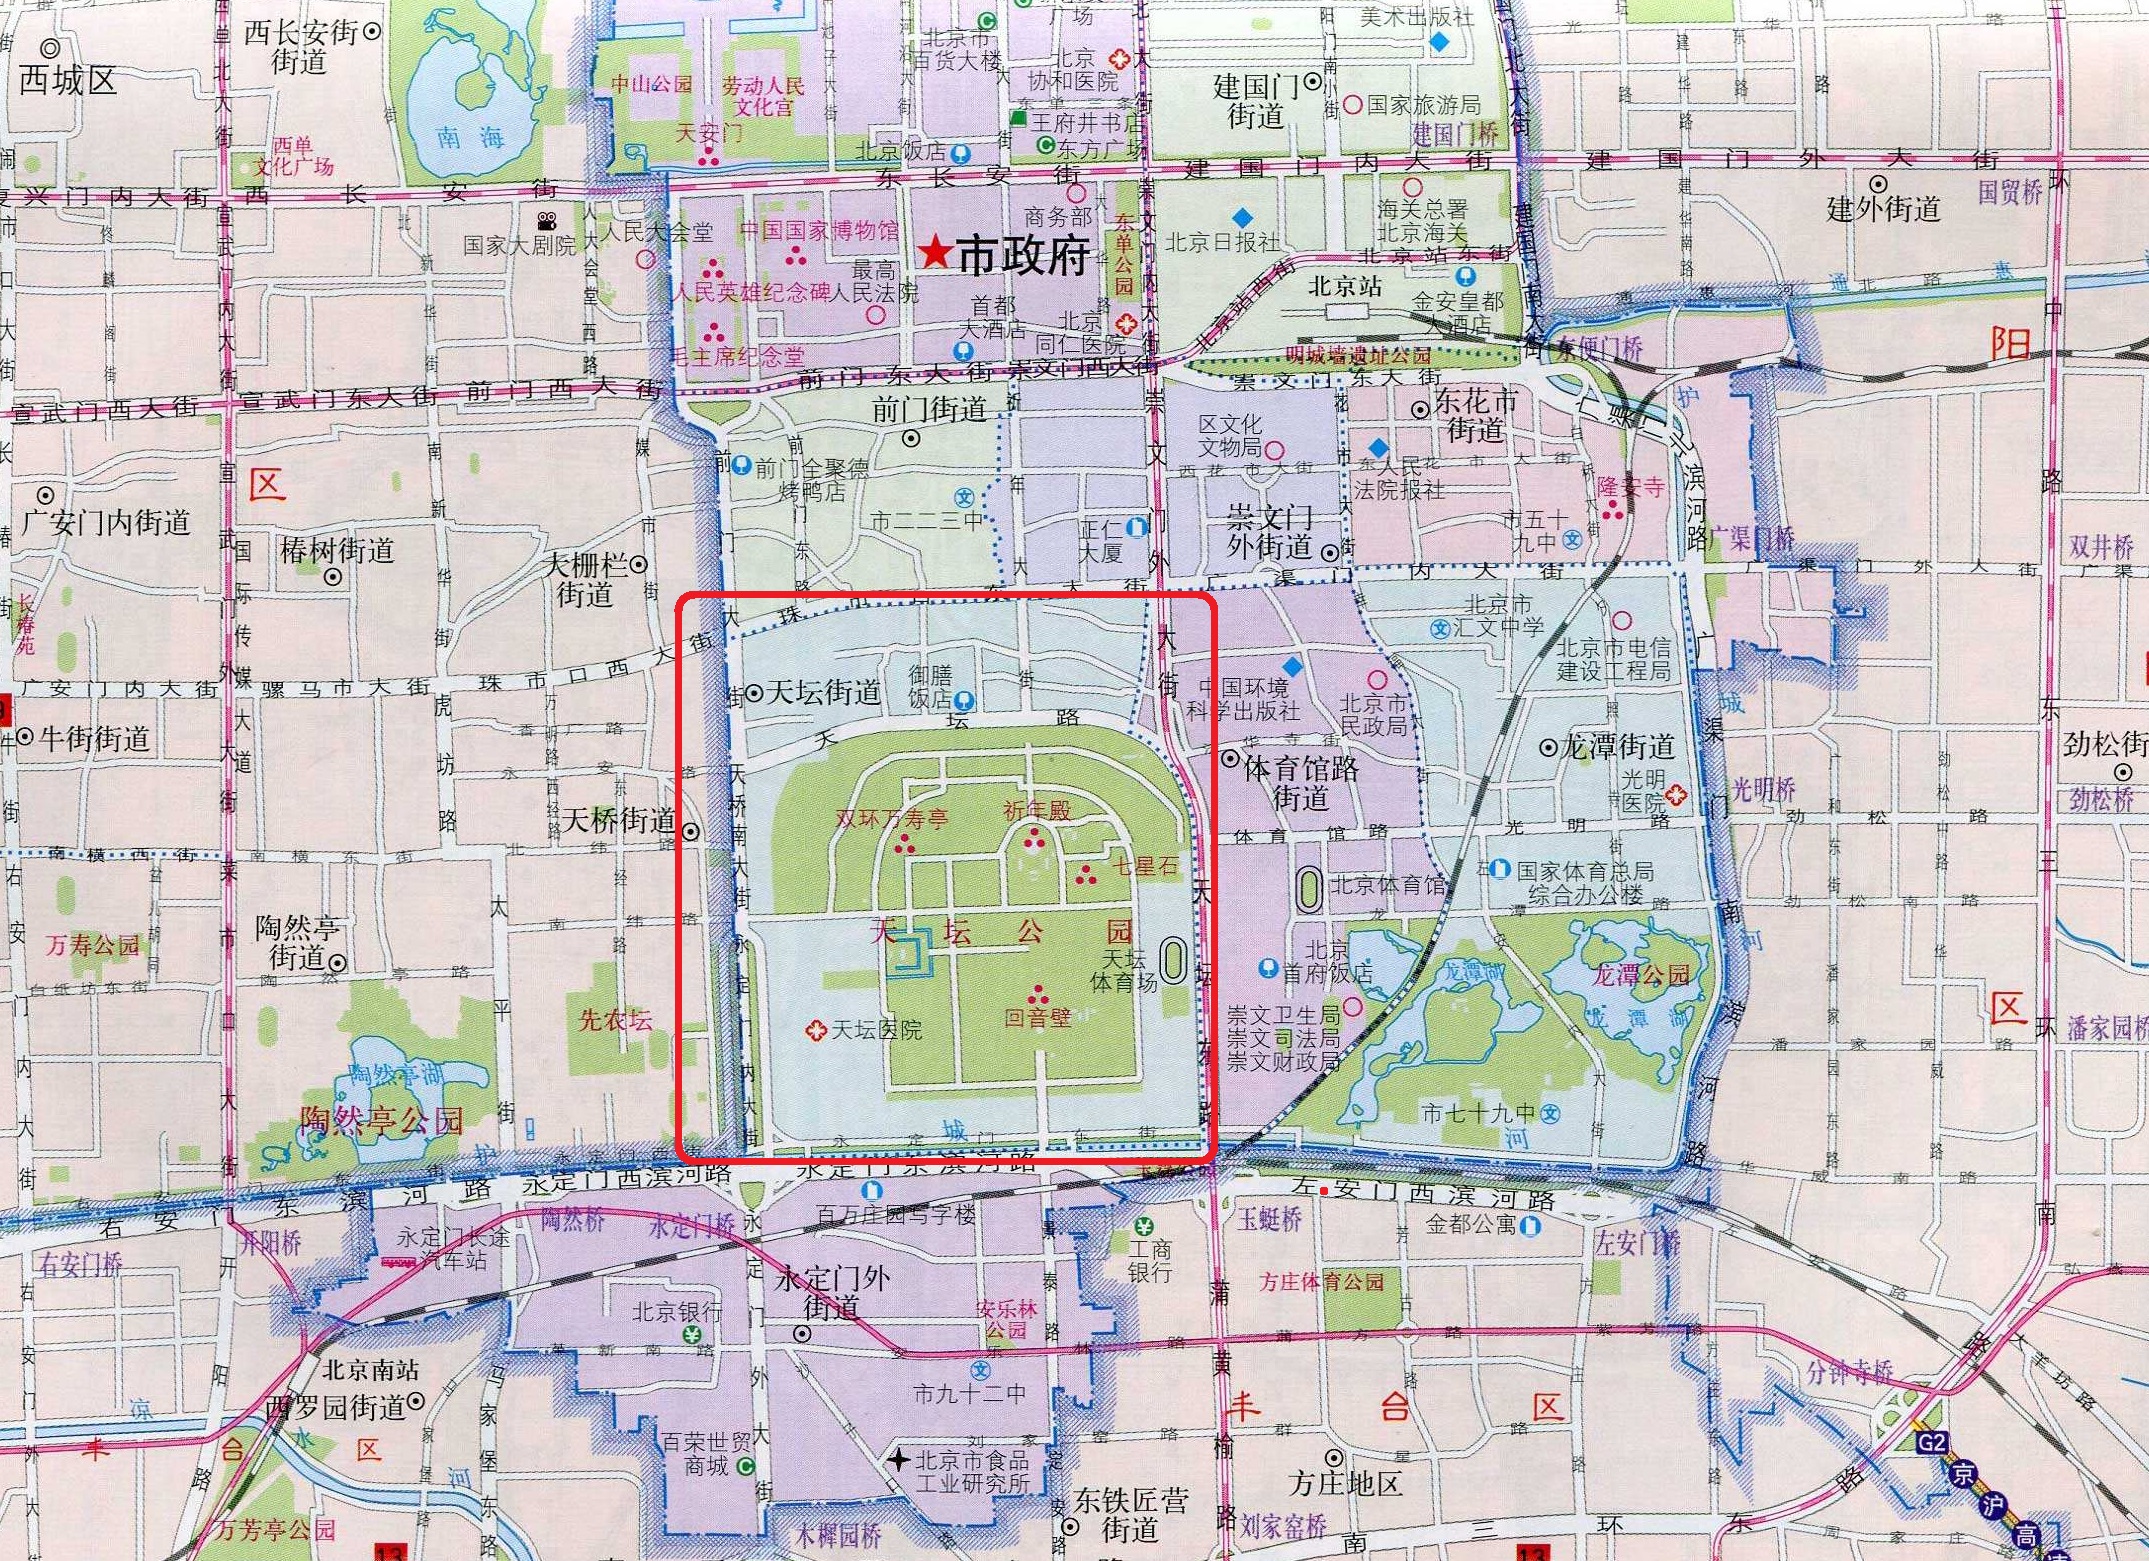 解析北京市东城区天坛街道的社区合并:疏解常住人口后